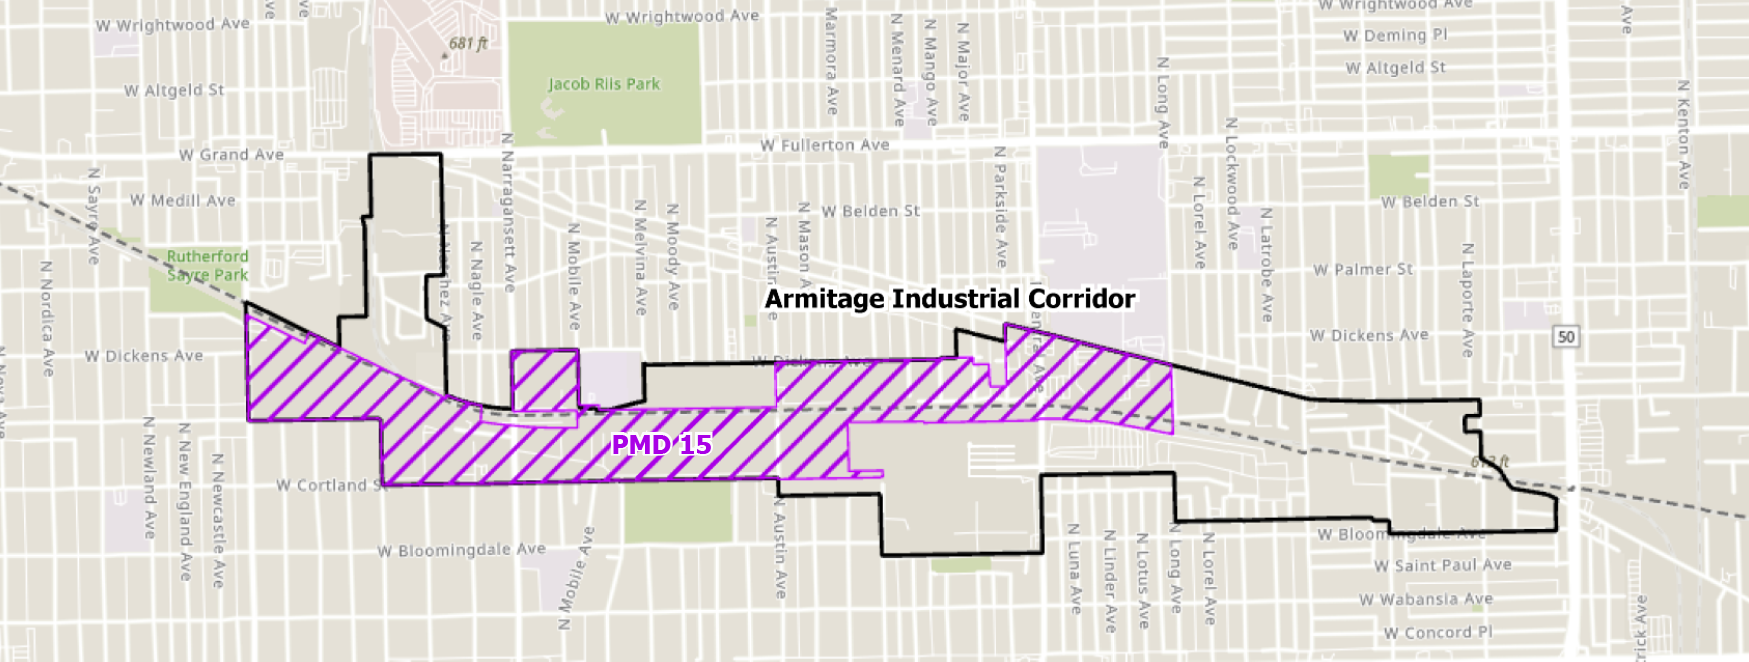 Armitage Industrial Corridor Map